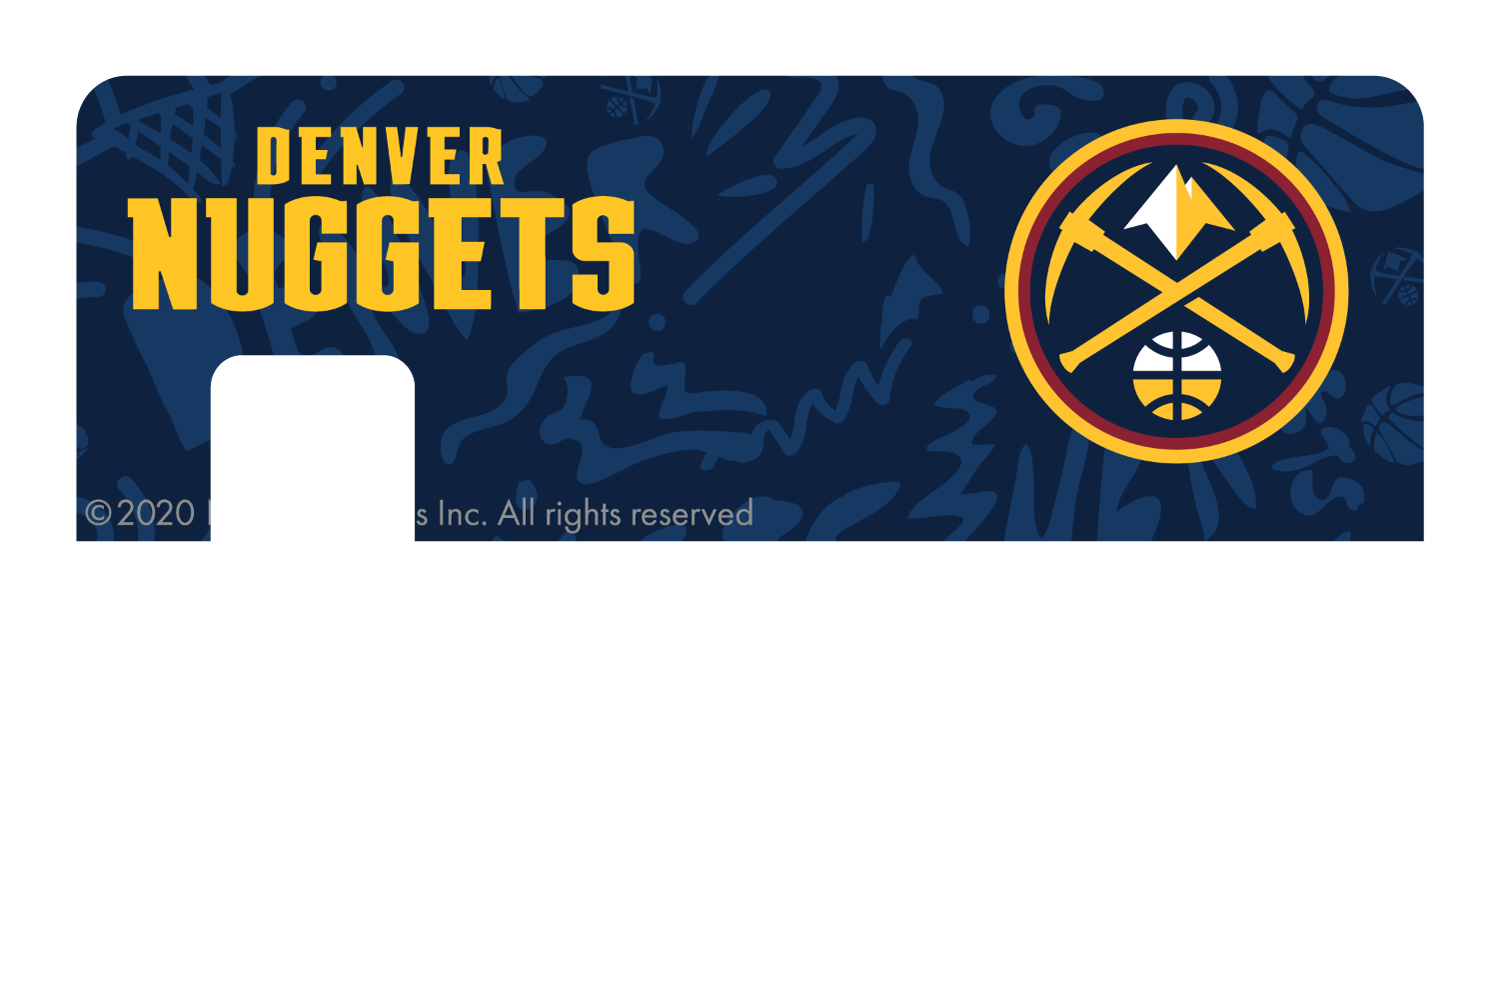 Denver Nuggets: Team Mural